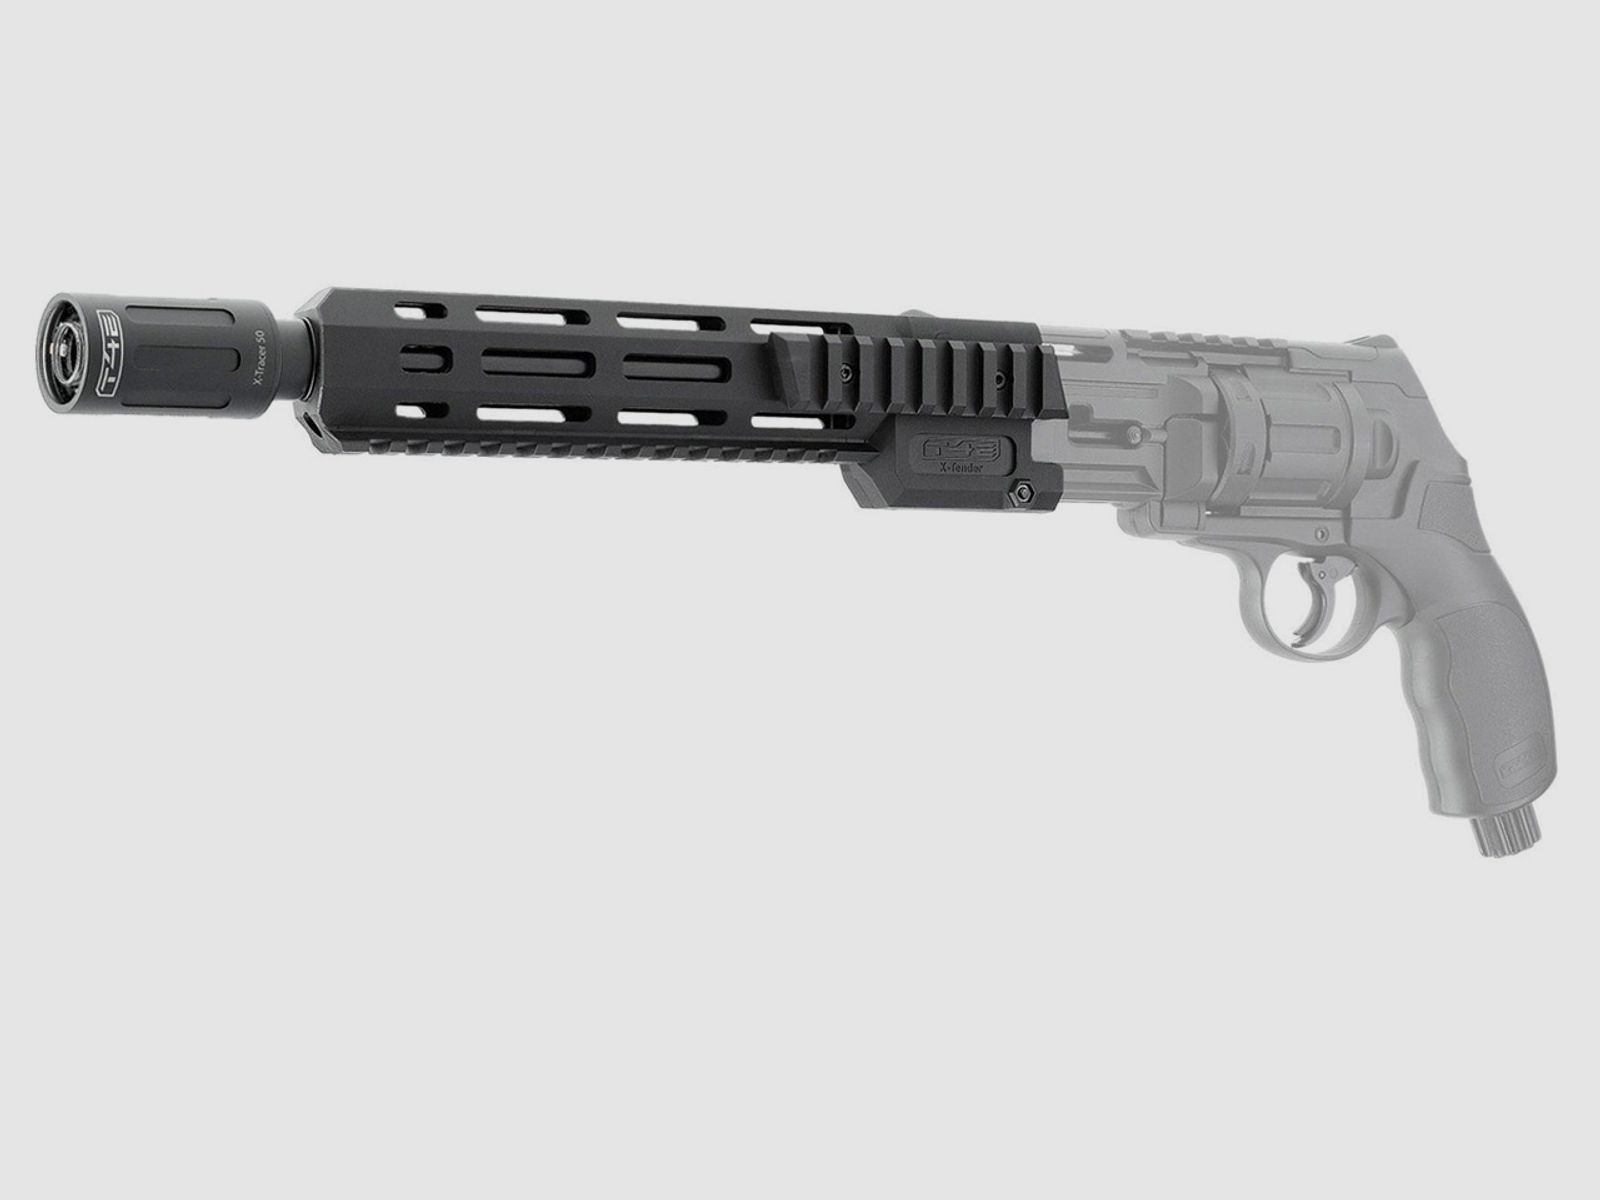 LED UV-Tracer T4E X-Tracer 50 fĂĽr TR 50 X-Tender fĂĽr CO2 Markierer Home Defense Revolver Umarex HDR 50